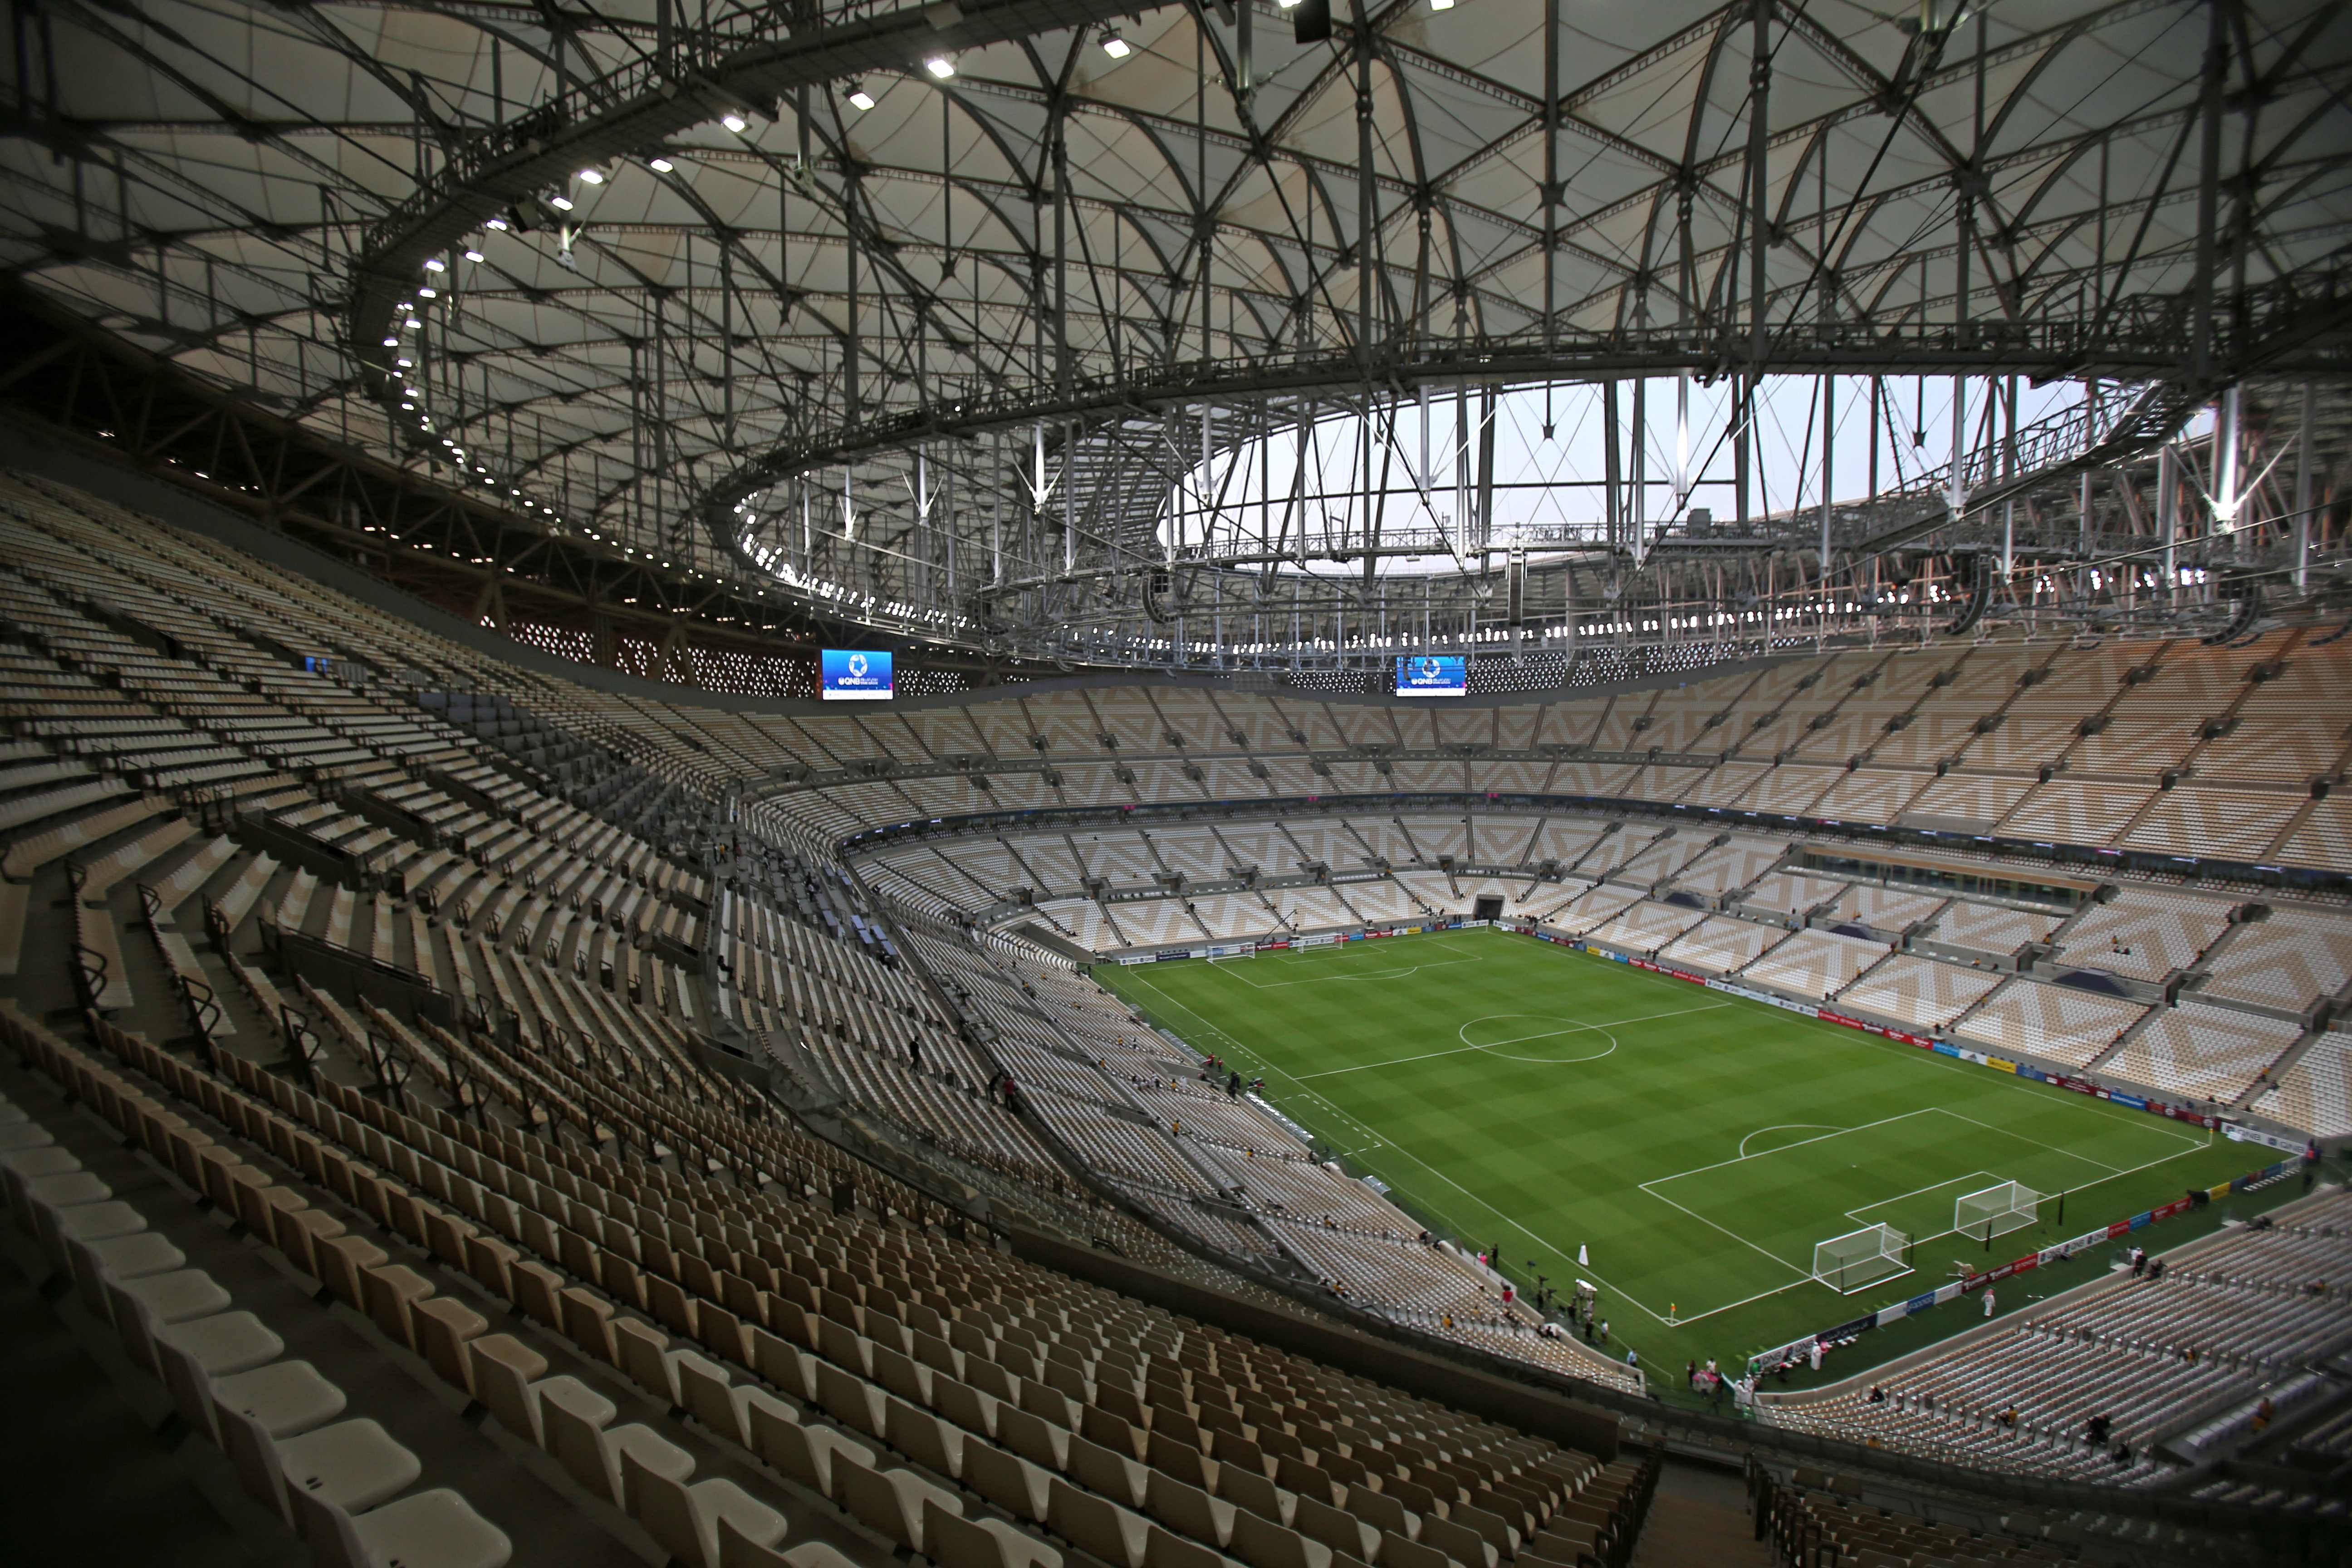 Vista general del Lusail Stadium, sede del Mundial de Qatar 2022. (Foto Prensa Libre: AFP)